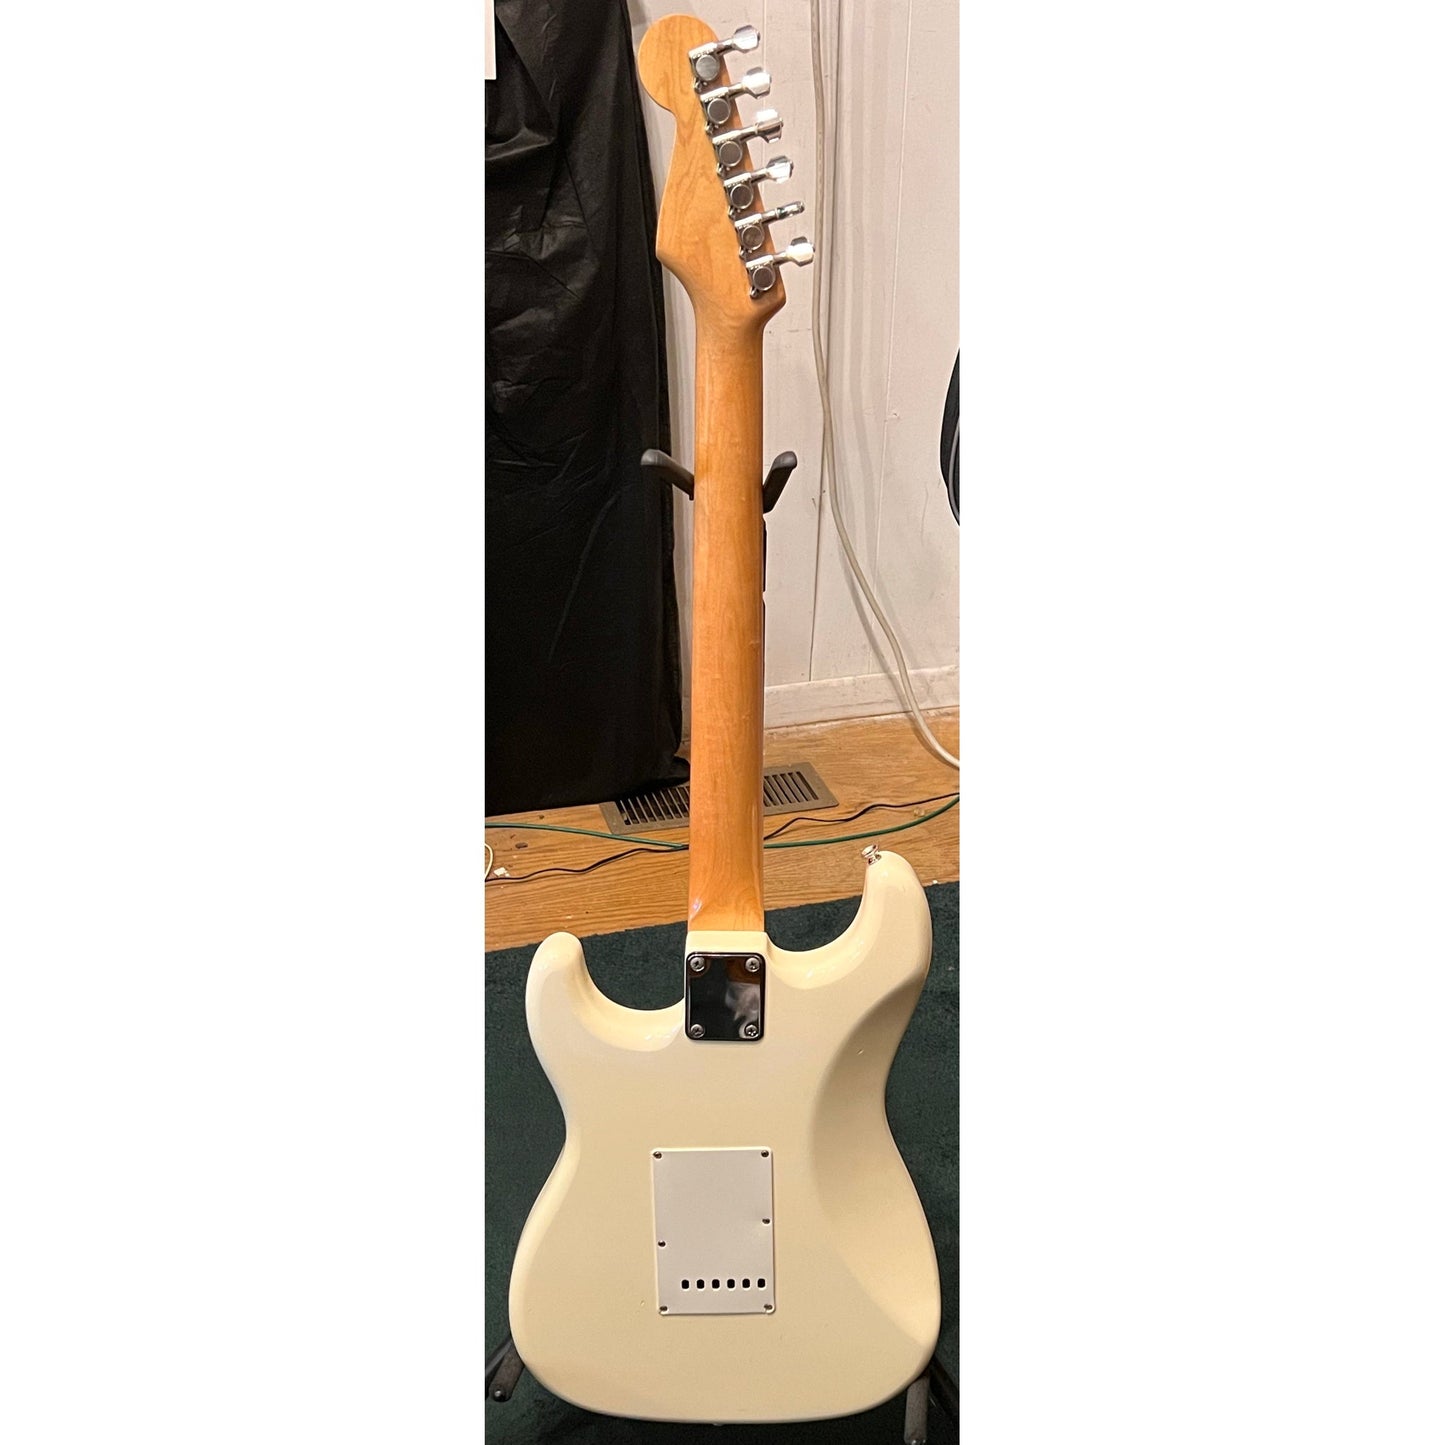 Fender Stratocaster Olympic White 1984-1985 Japan